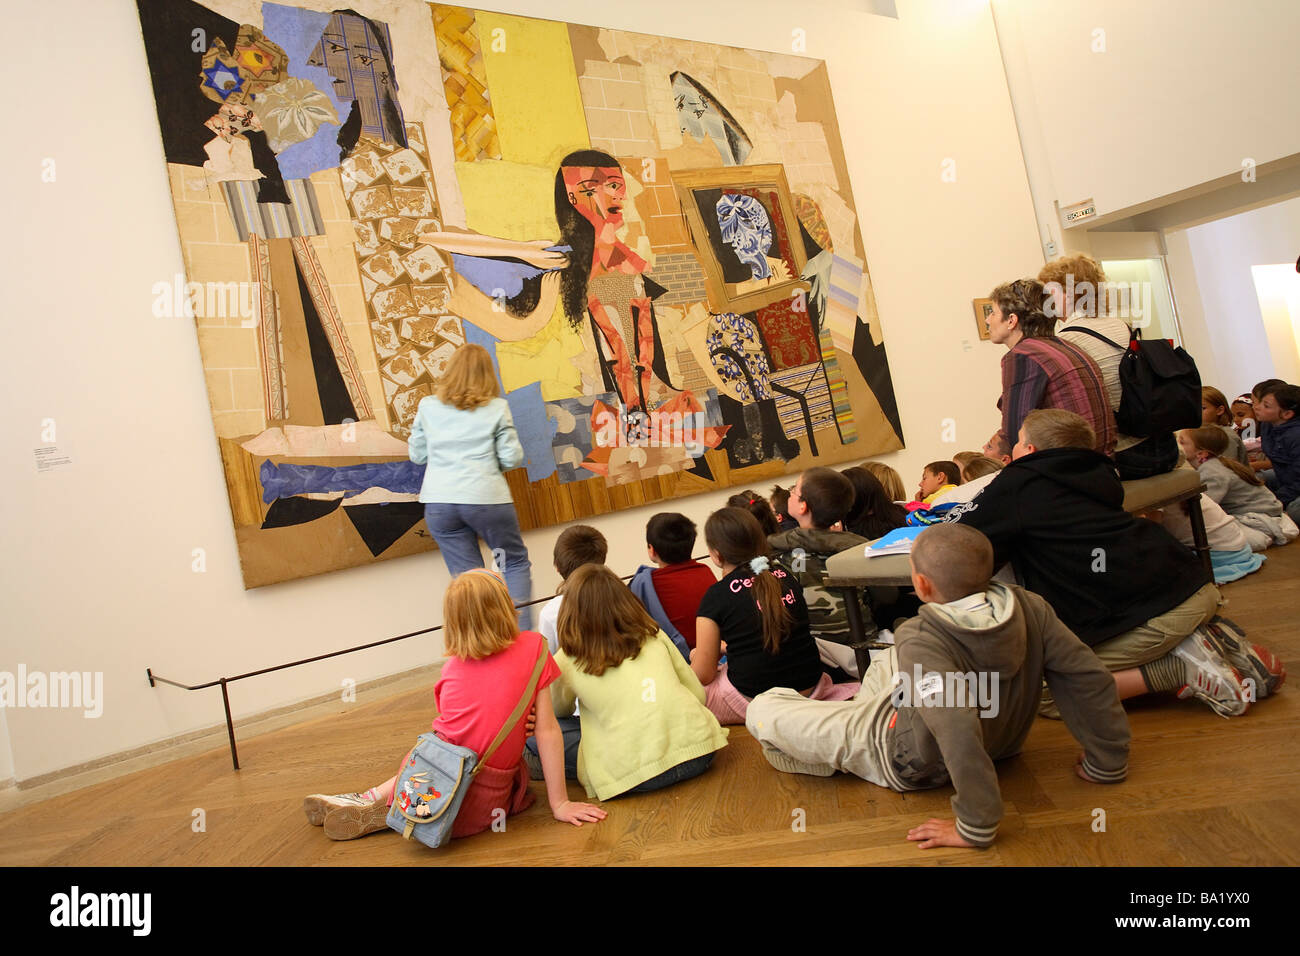 Musée Picasso PARIS CHILDS AVANT DE LA PEINTURE FEMMES UN LEUR TOILETTE Banque D'Images